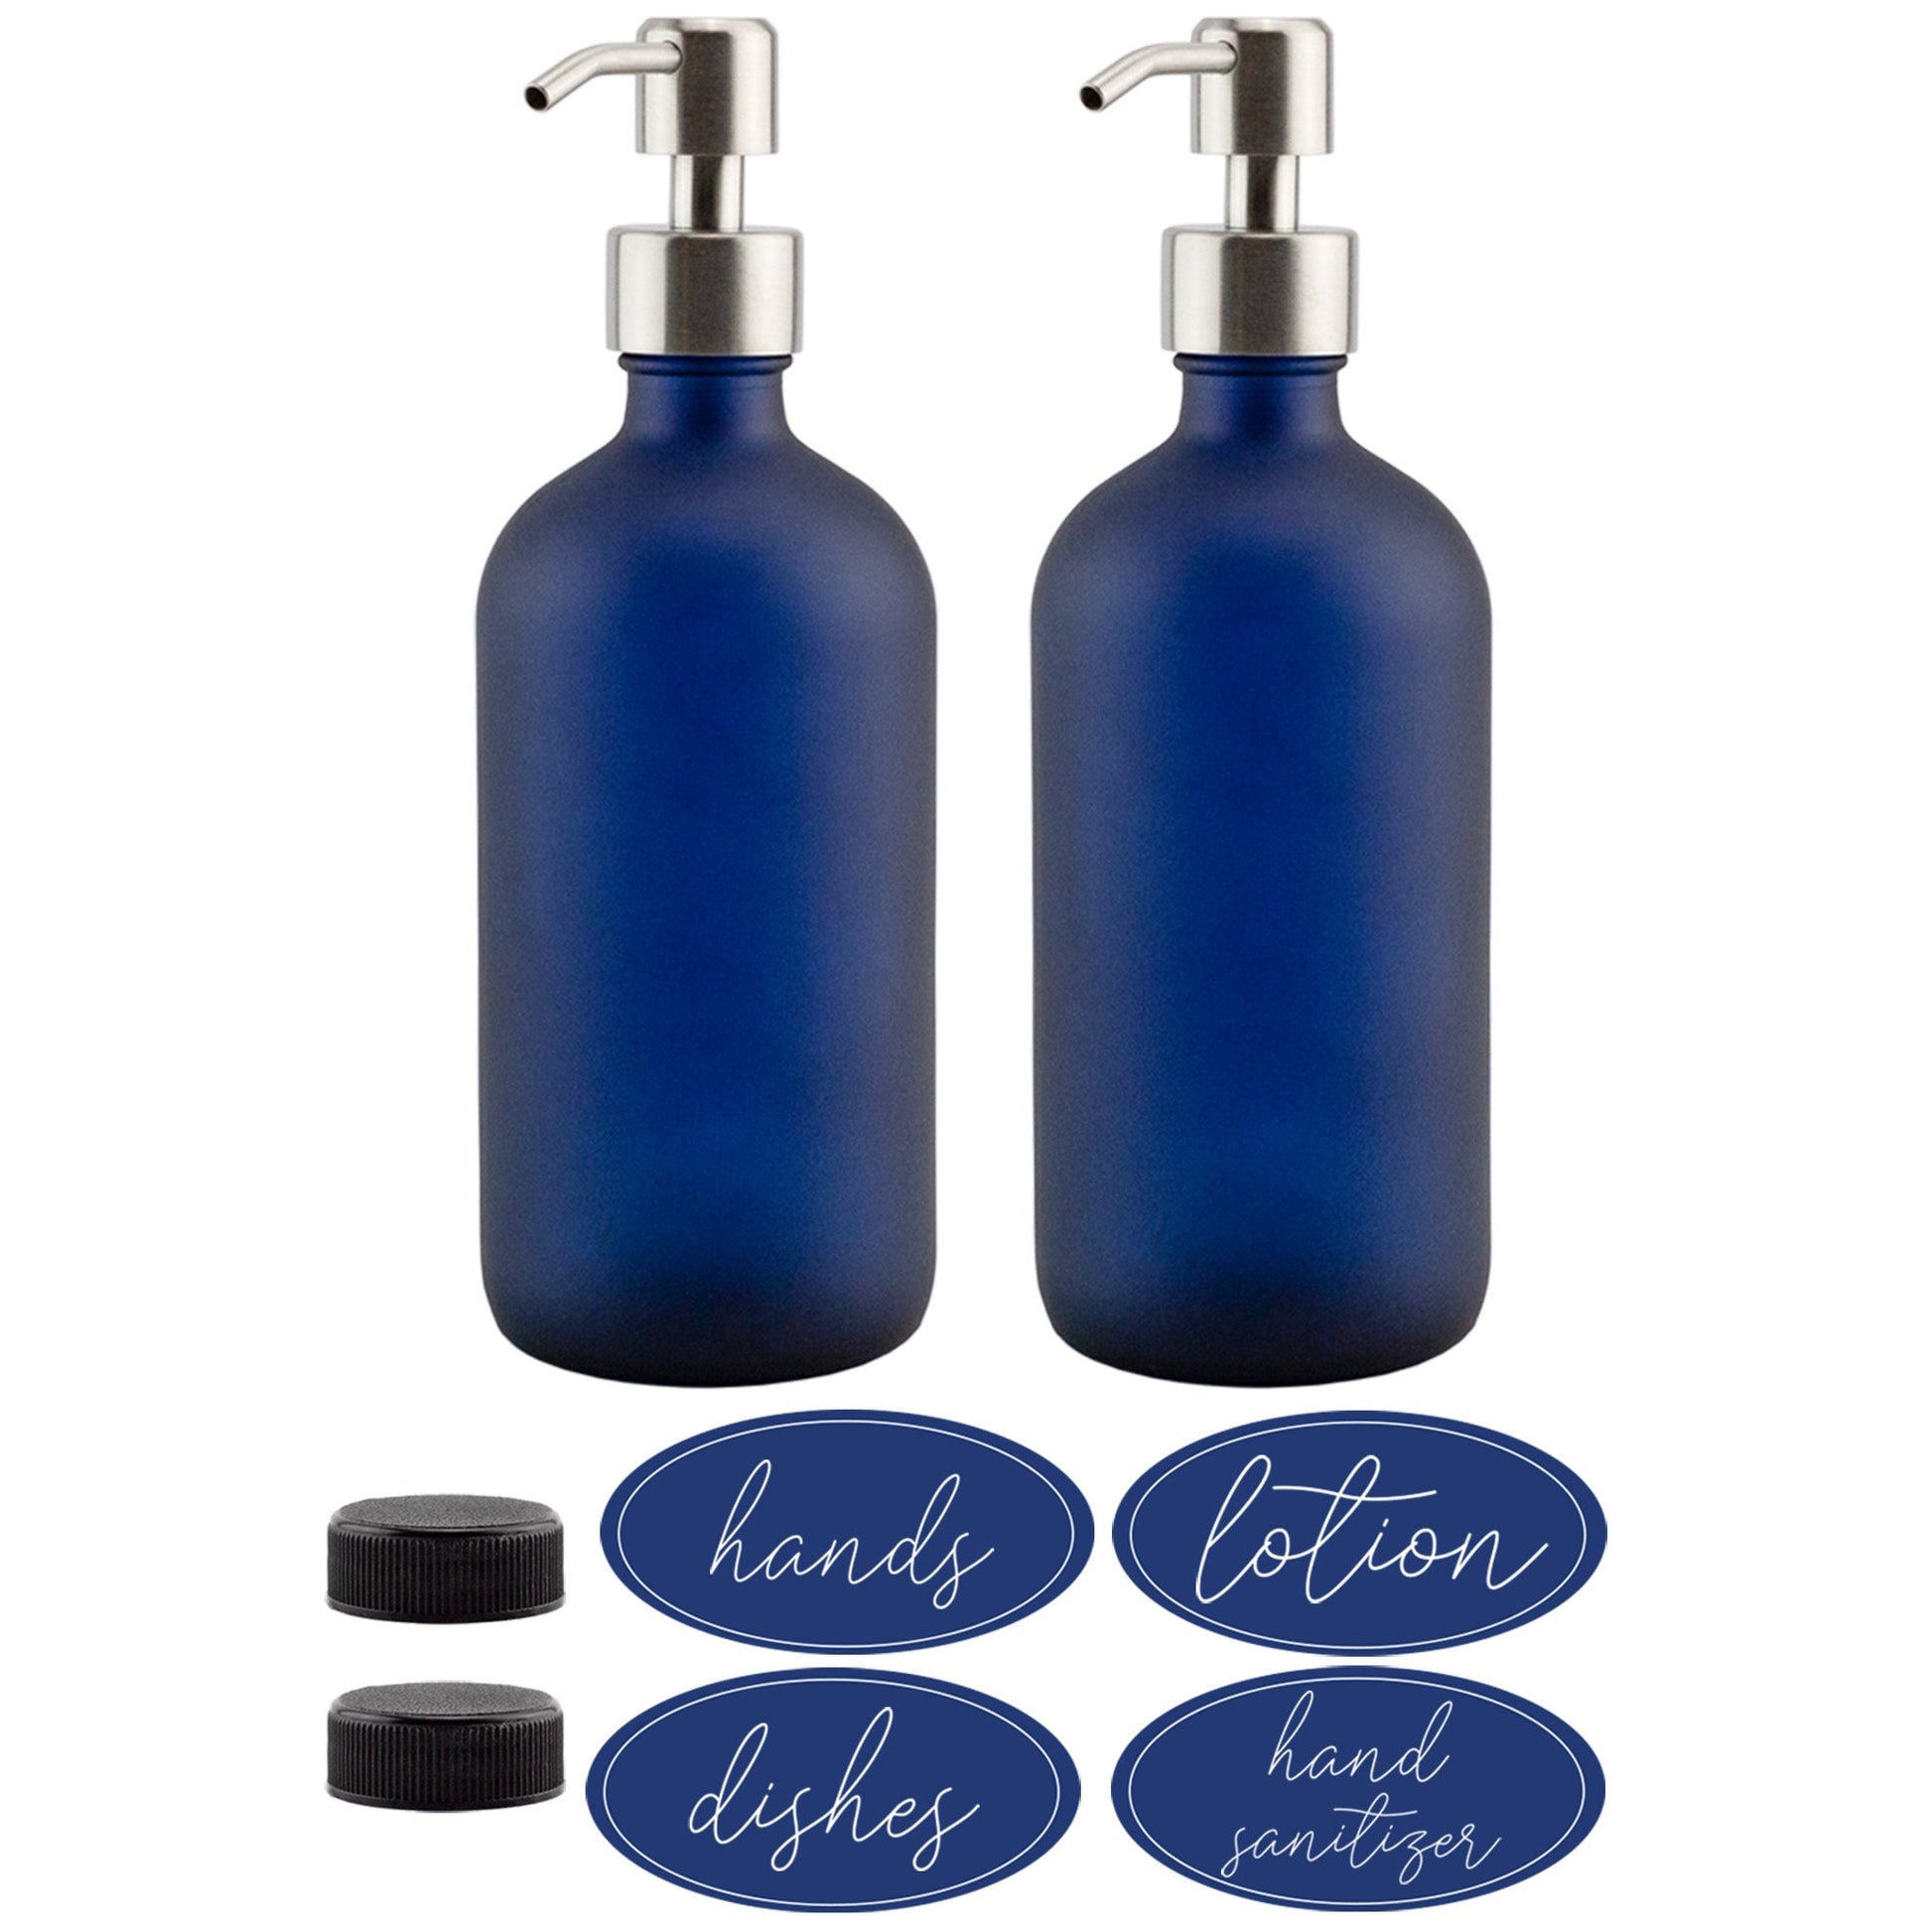 16oz Glass Pump Bottles (Set of 2, Blue w/ Silver) - sh2142cb0